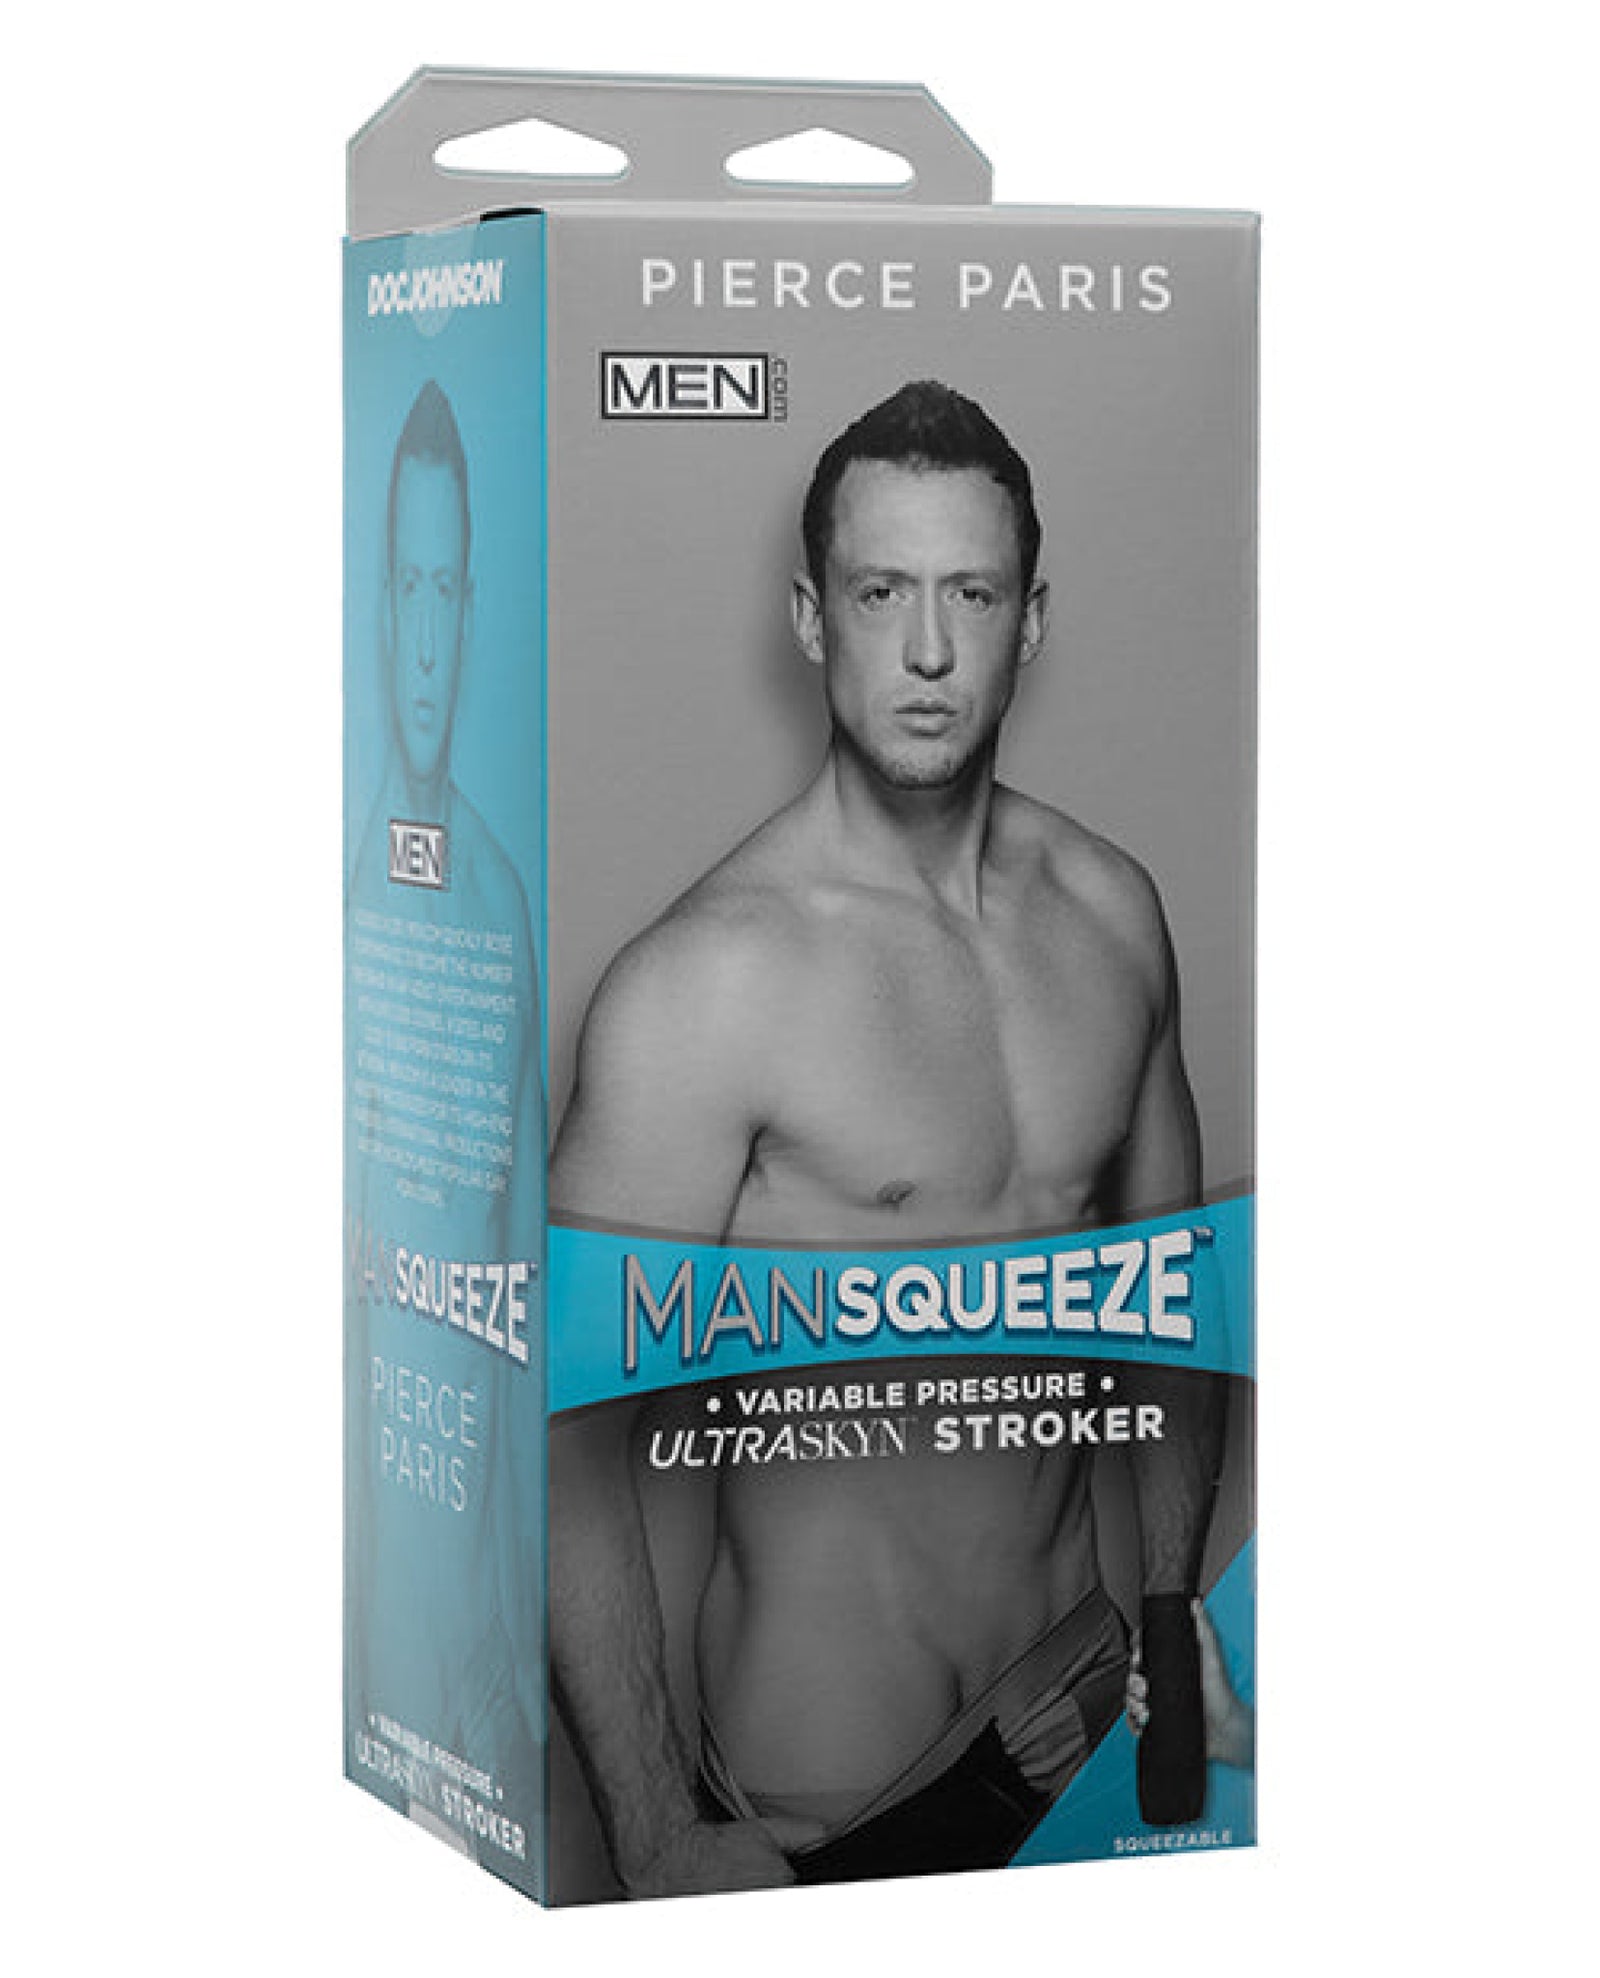 Man Squeeze Ultraskyn Ass Stroker - Pierce Paris Doc Johnson